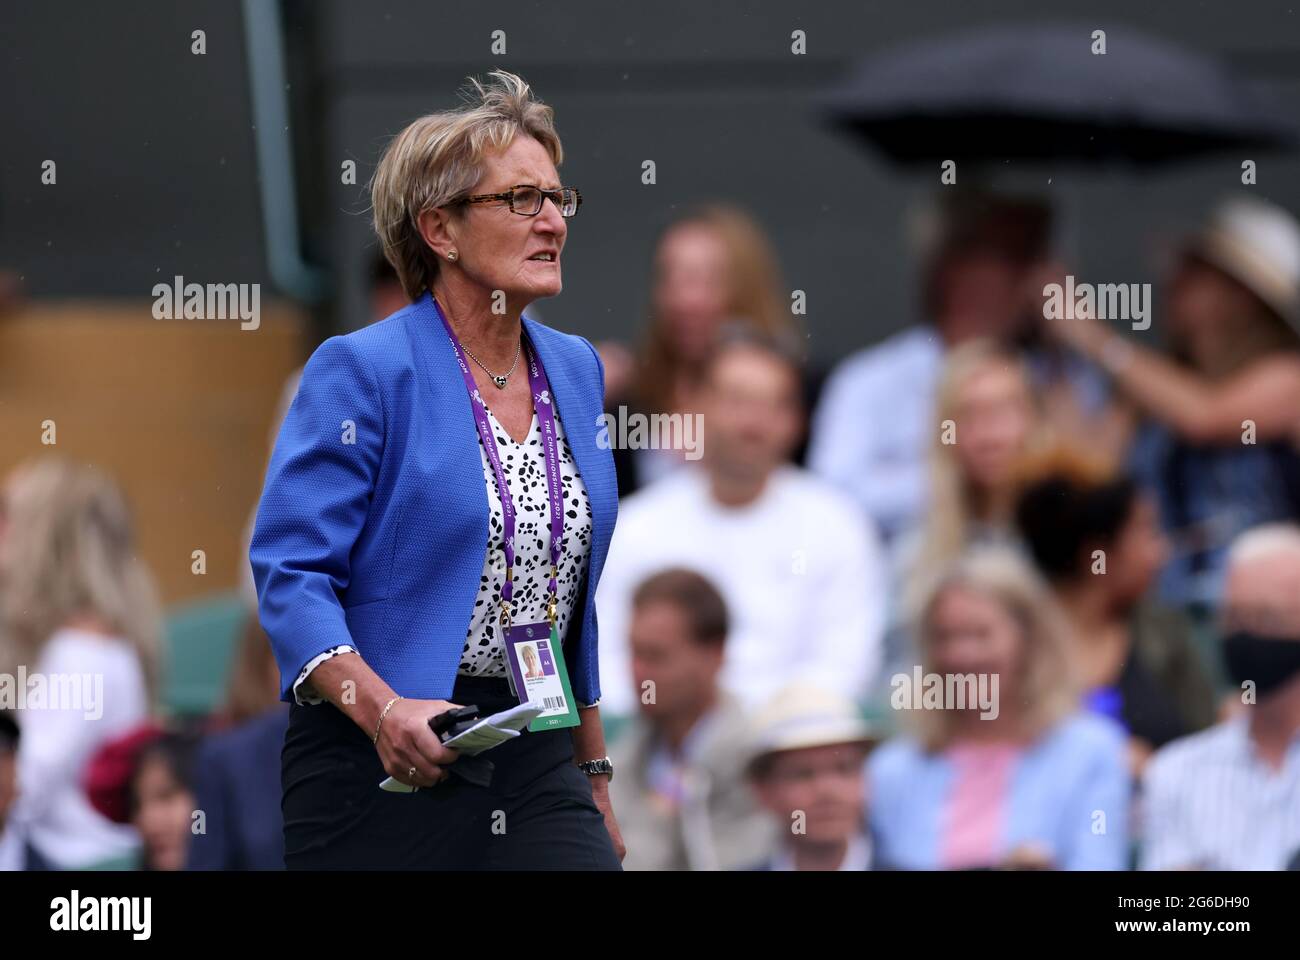 Denise Parnell il settimo giorno di Wimbledon all'All England Lawn Tennis and Croquet Club, Wimbledon. Data immagine: Lunedì 5 luglio 2021. Foto Stock